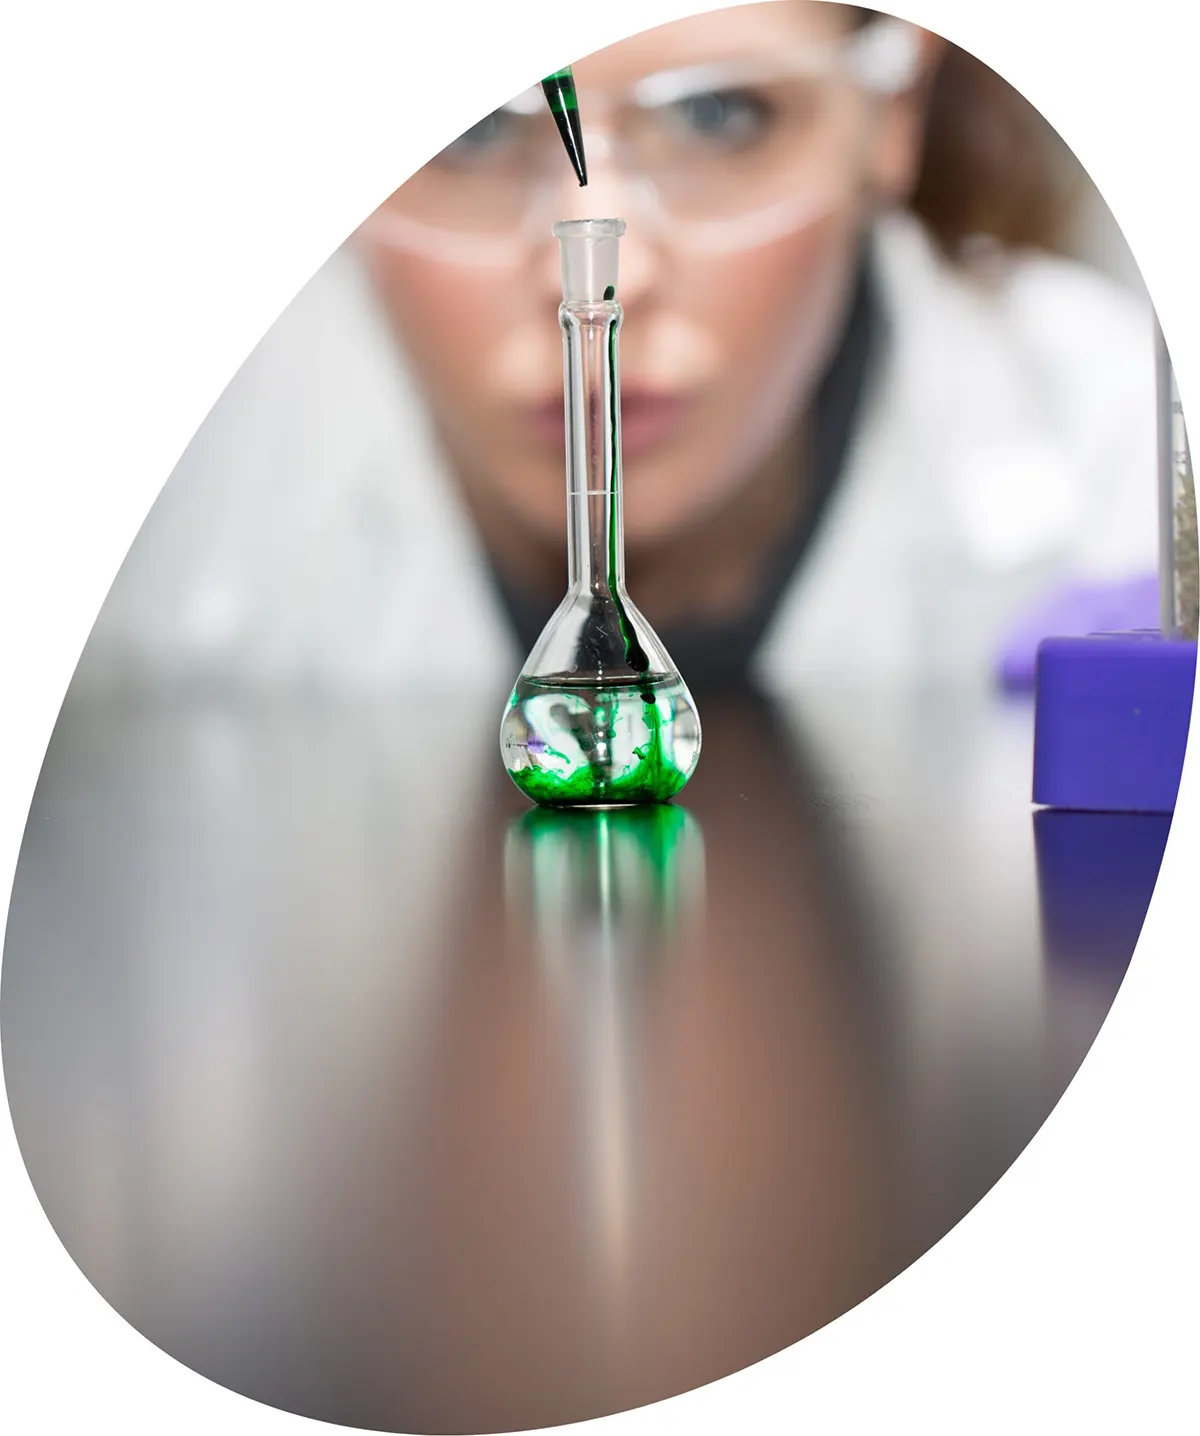 Female scientist adding green drops into a beaker